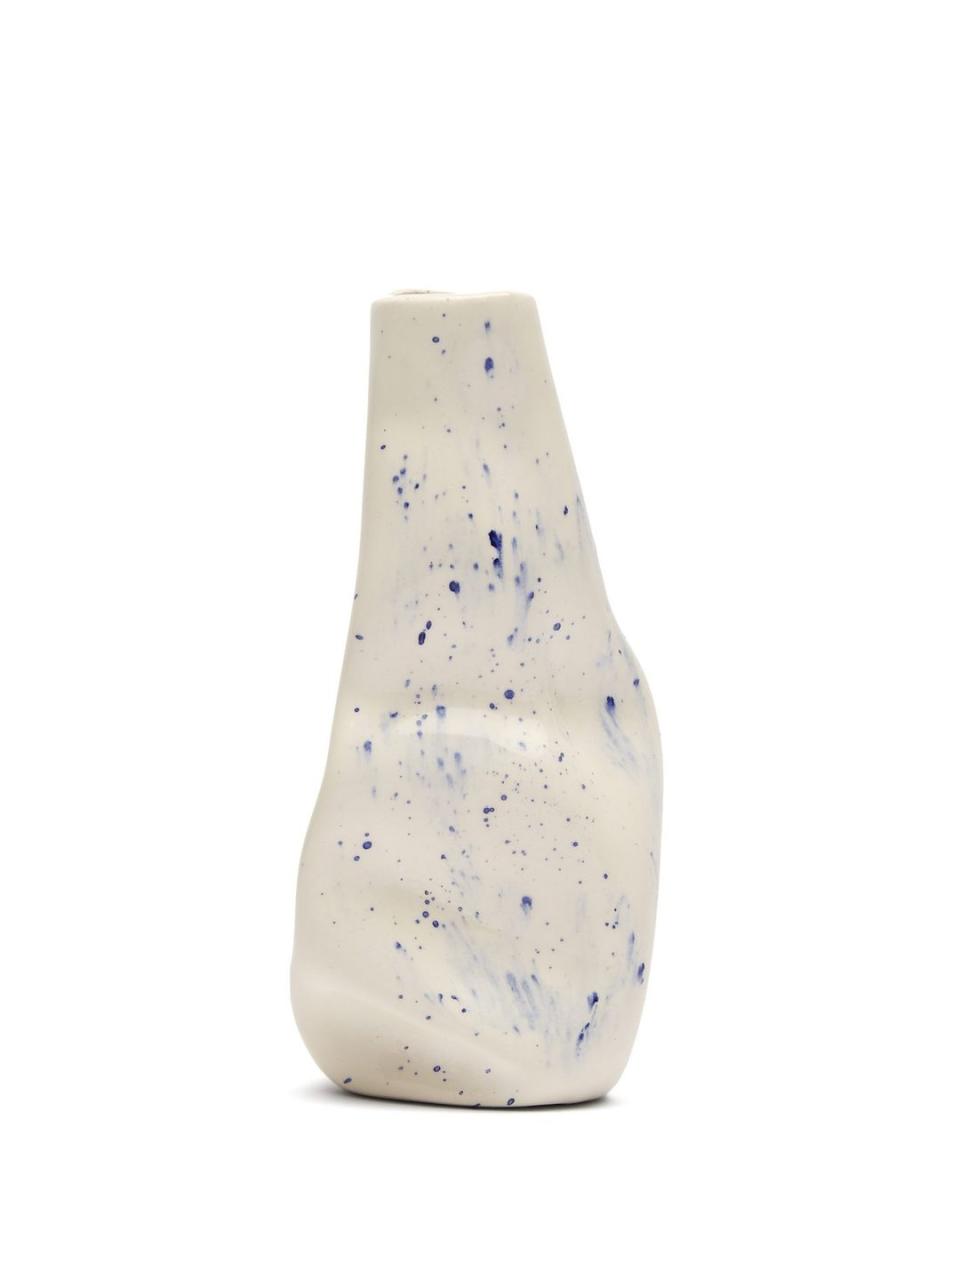 10) Ceramic vase